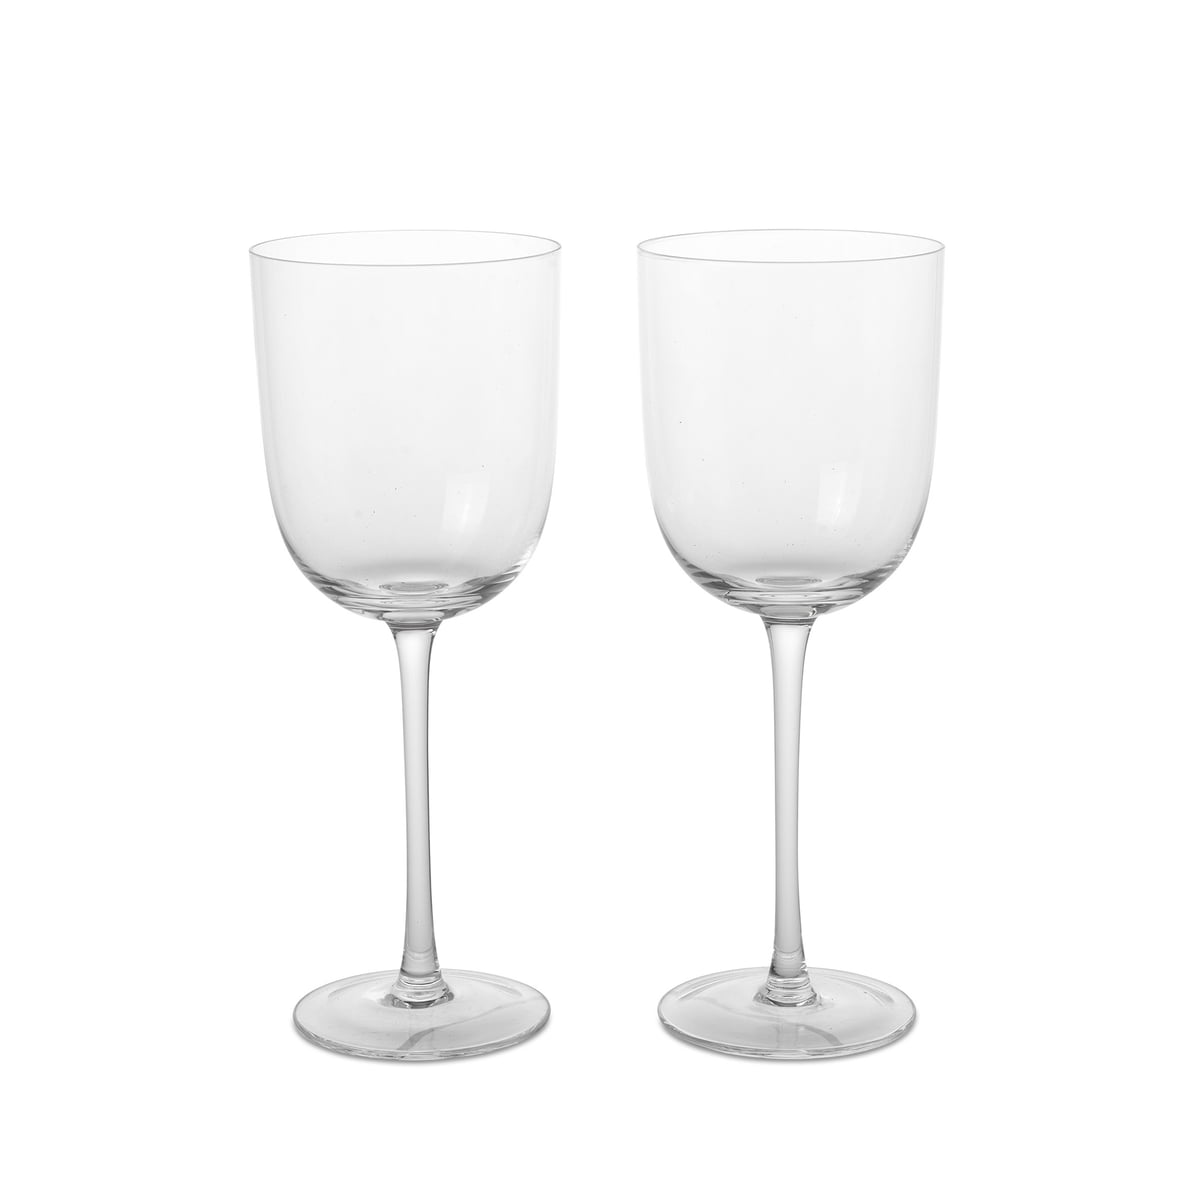 ferm living - host verre à vin blanc, transparent (set de 2)